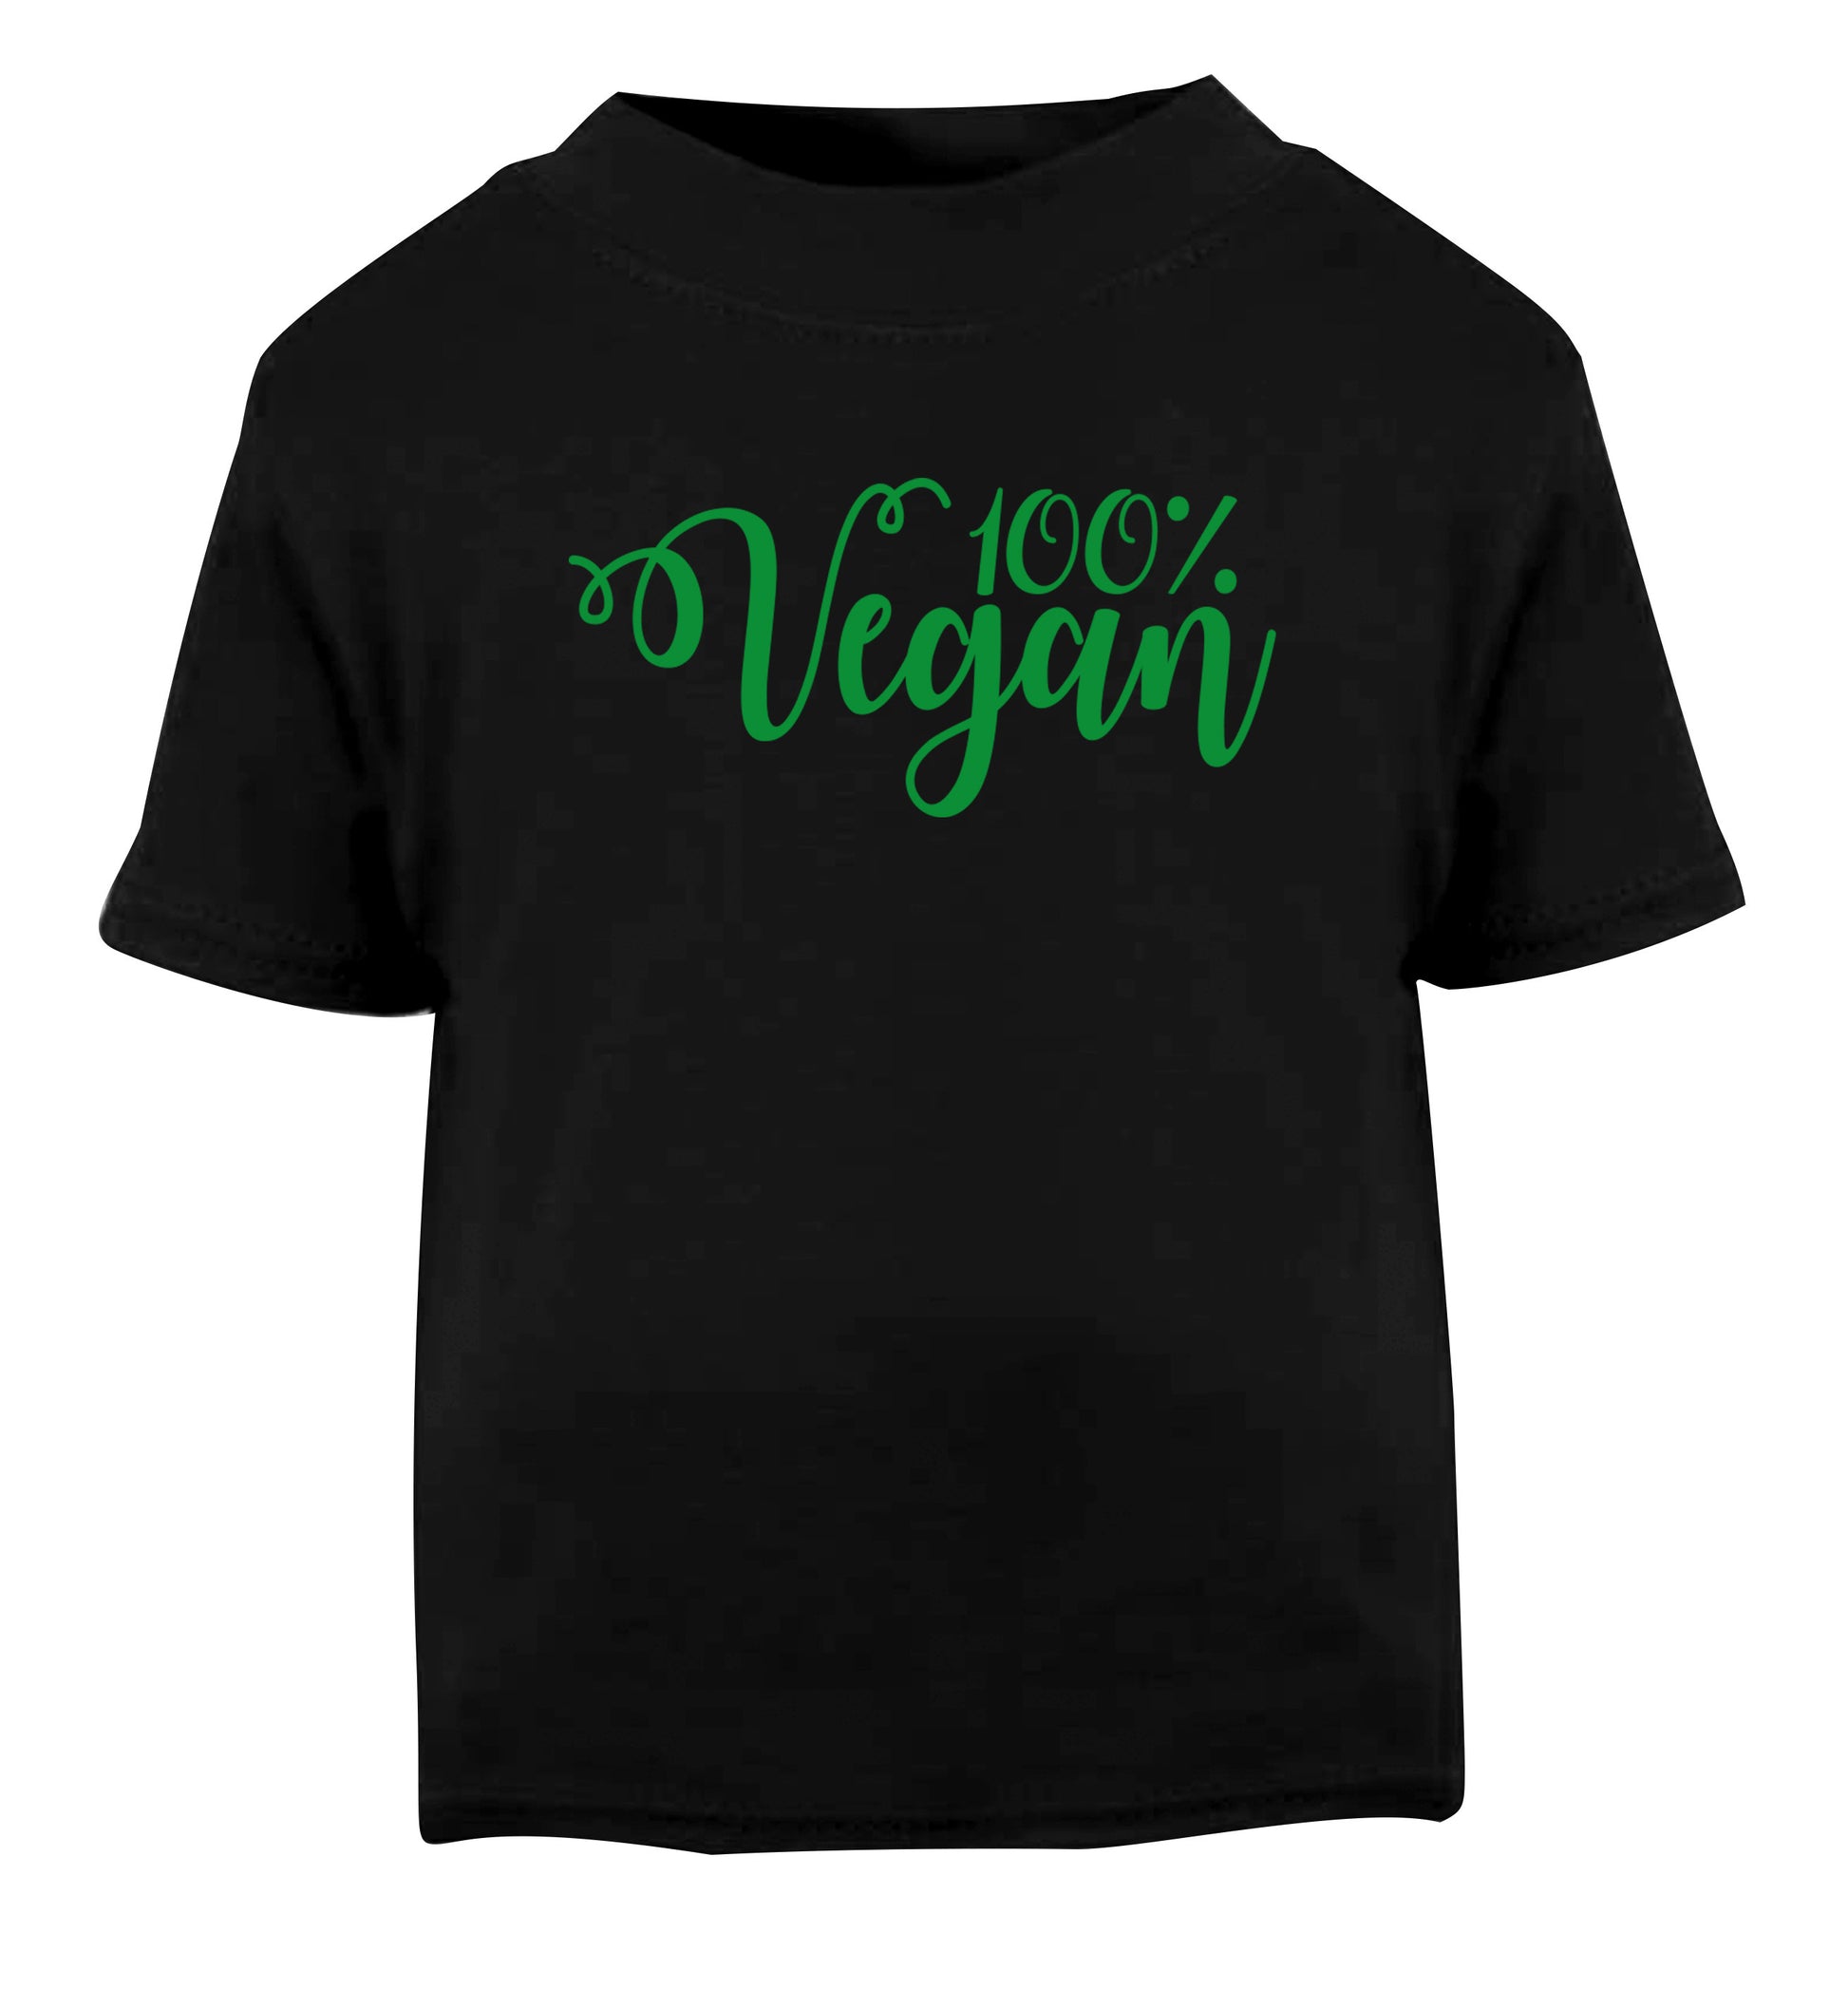 100% Vegan Black Baby Toddler Tshirt 2 years